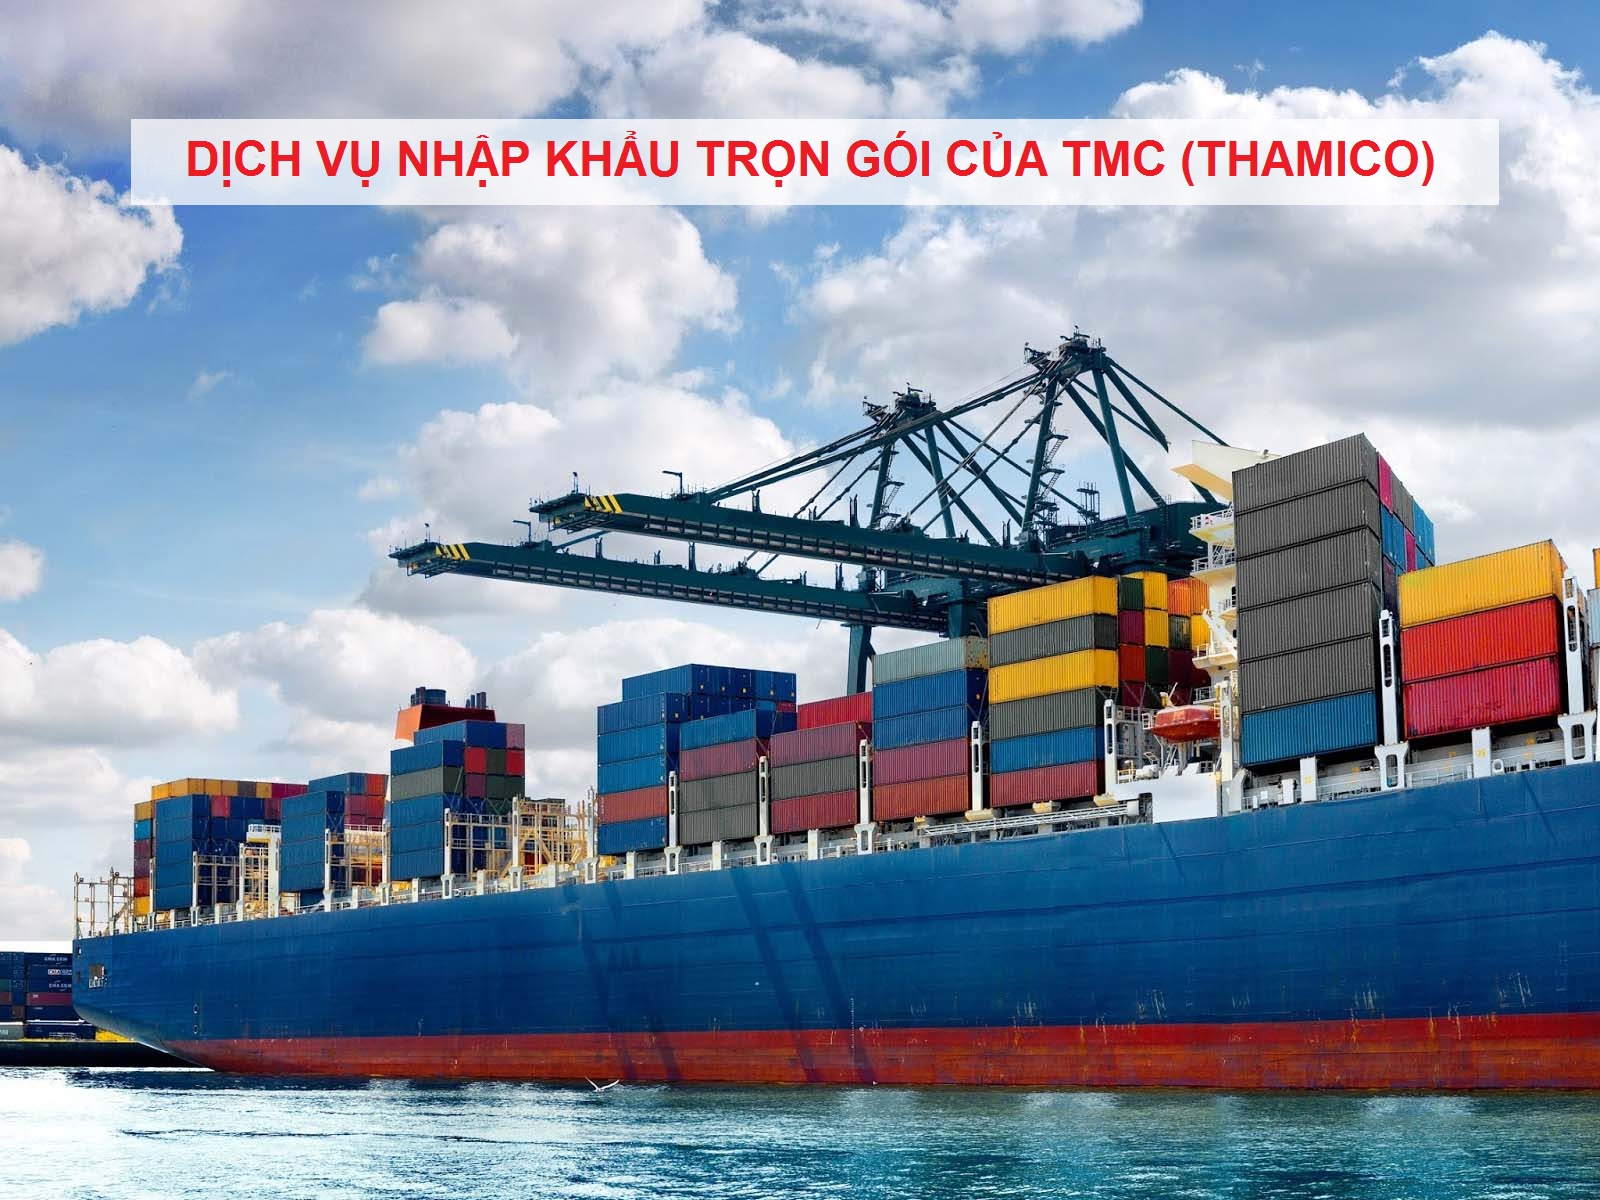 dịch vụ nhập khẩu trọn gói của TMC Thamico